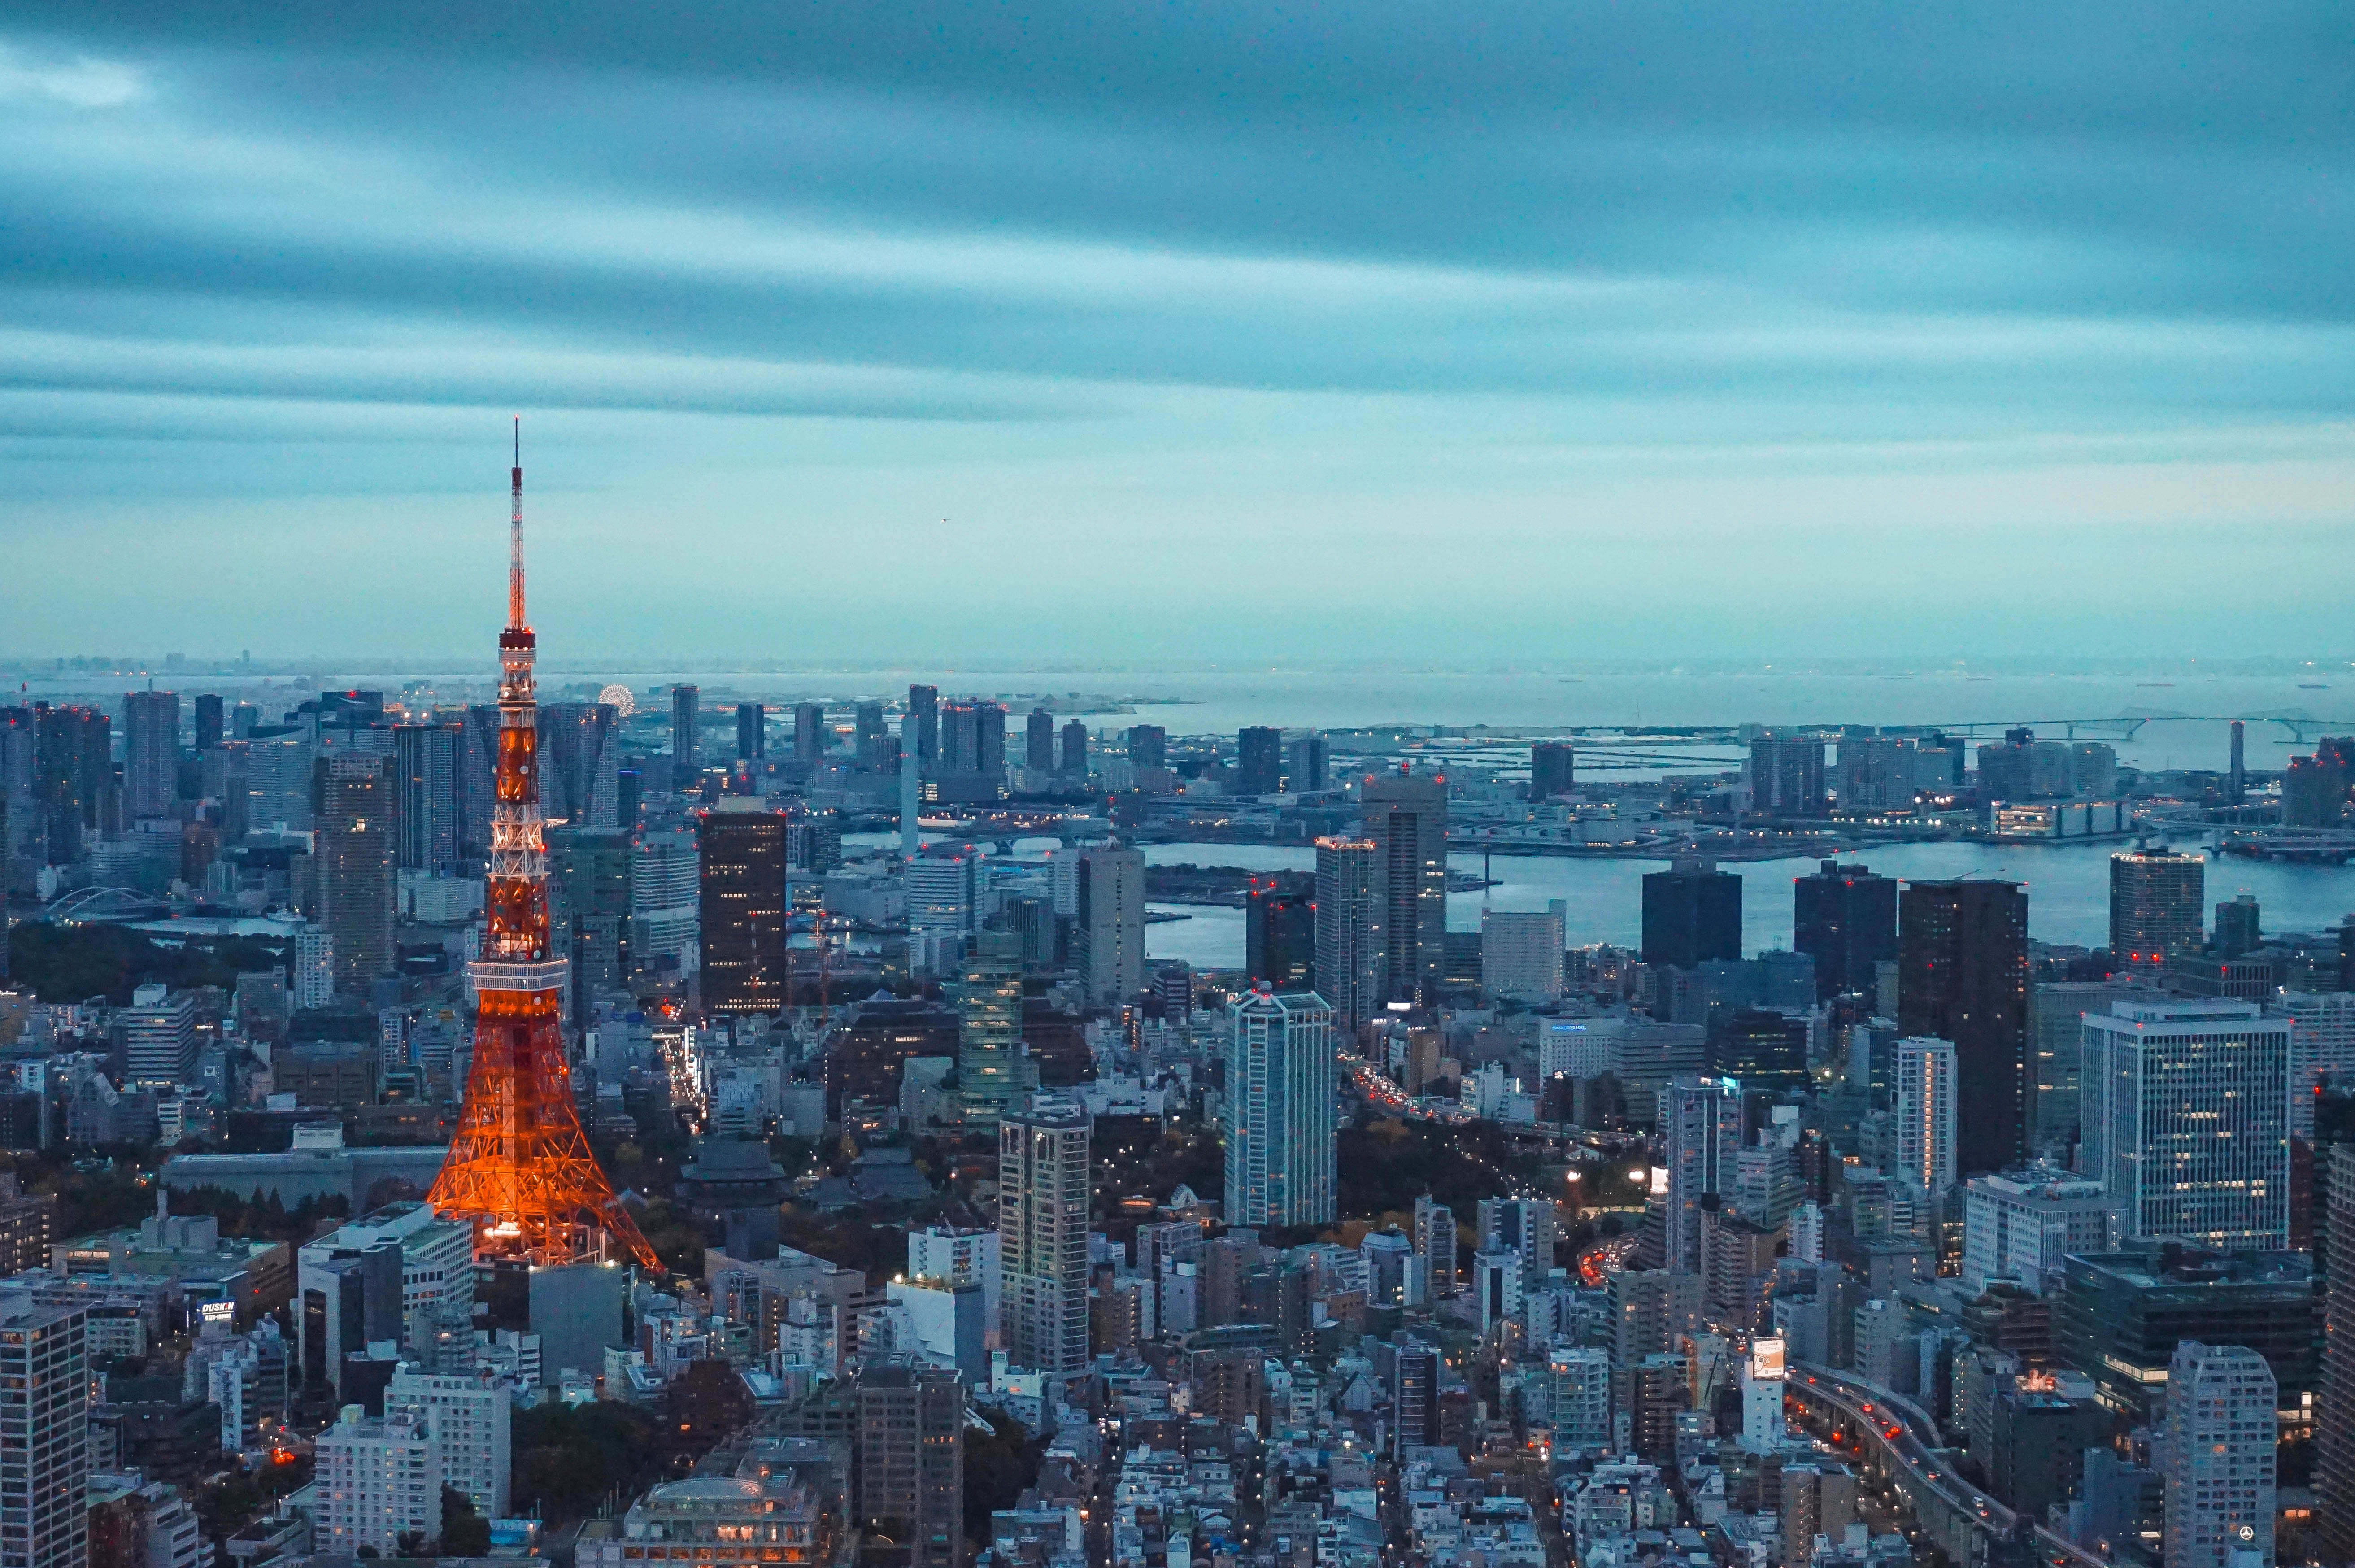 東京タワーの壁紙,都市の景観,首都圏,市街地,市,スカイライン